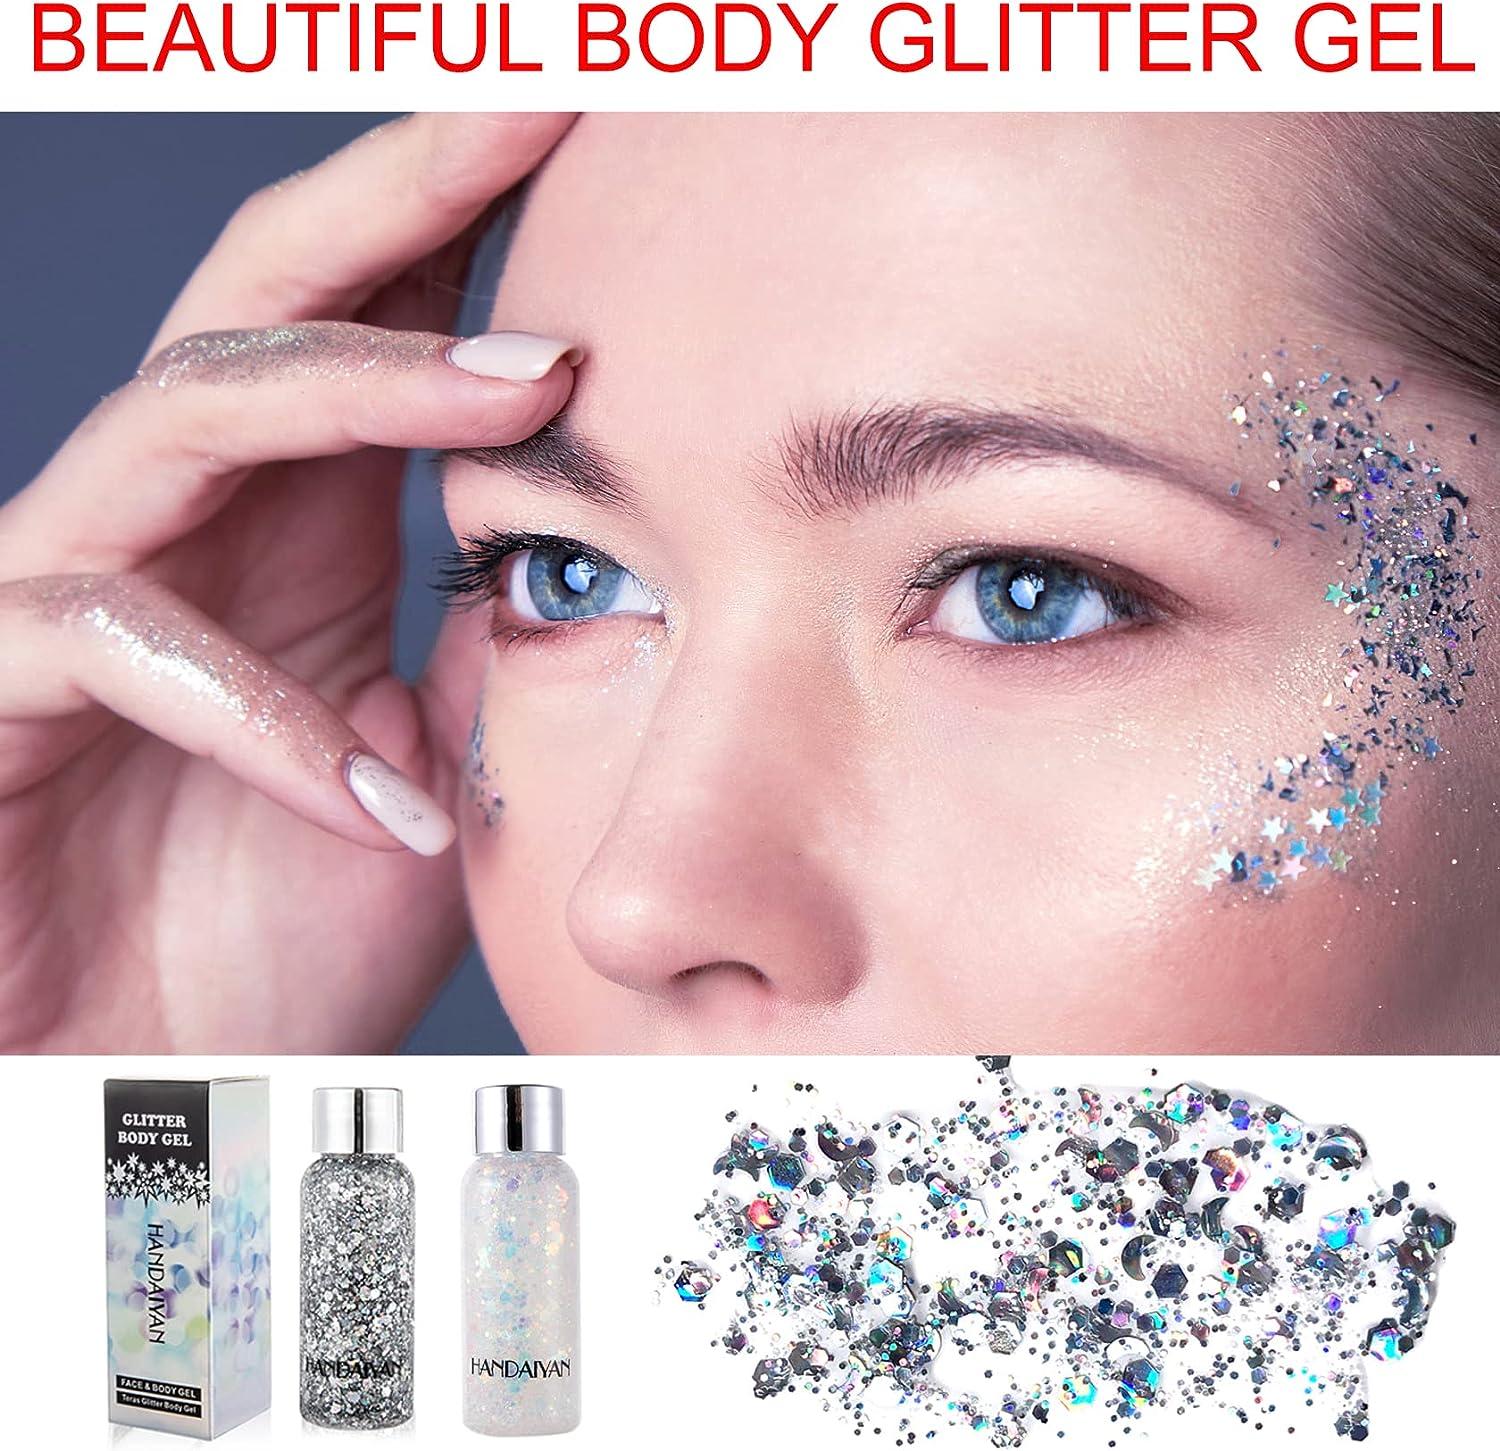  Body Glitter Gel for Eye Face Hair Body Glitter Makeup